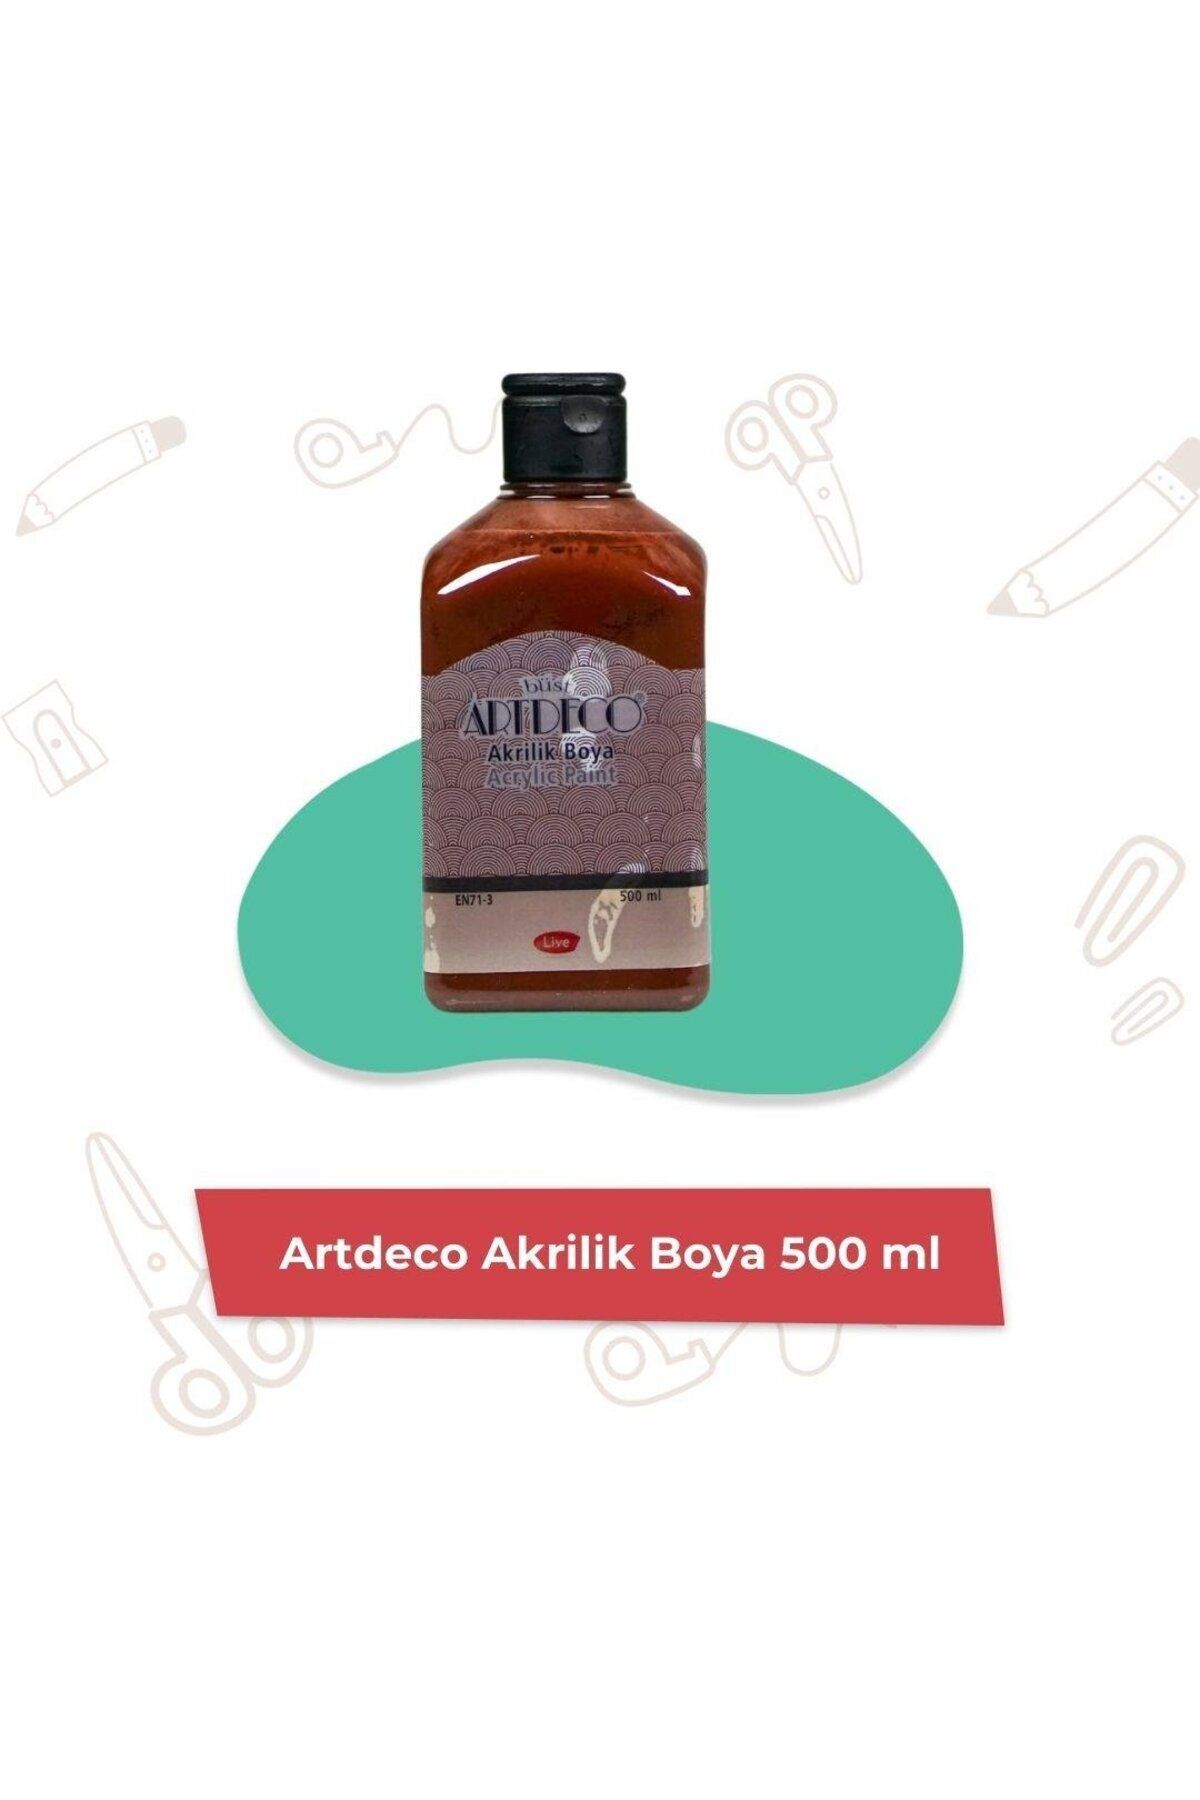 Artdeco Akrilik Boya 500 ml En71-3 (KAHVERENGİ)